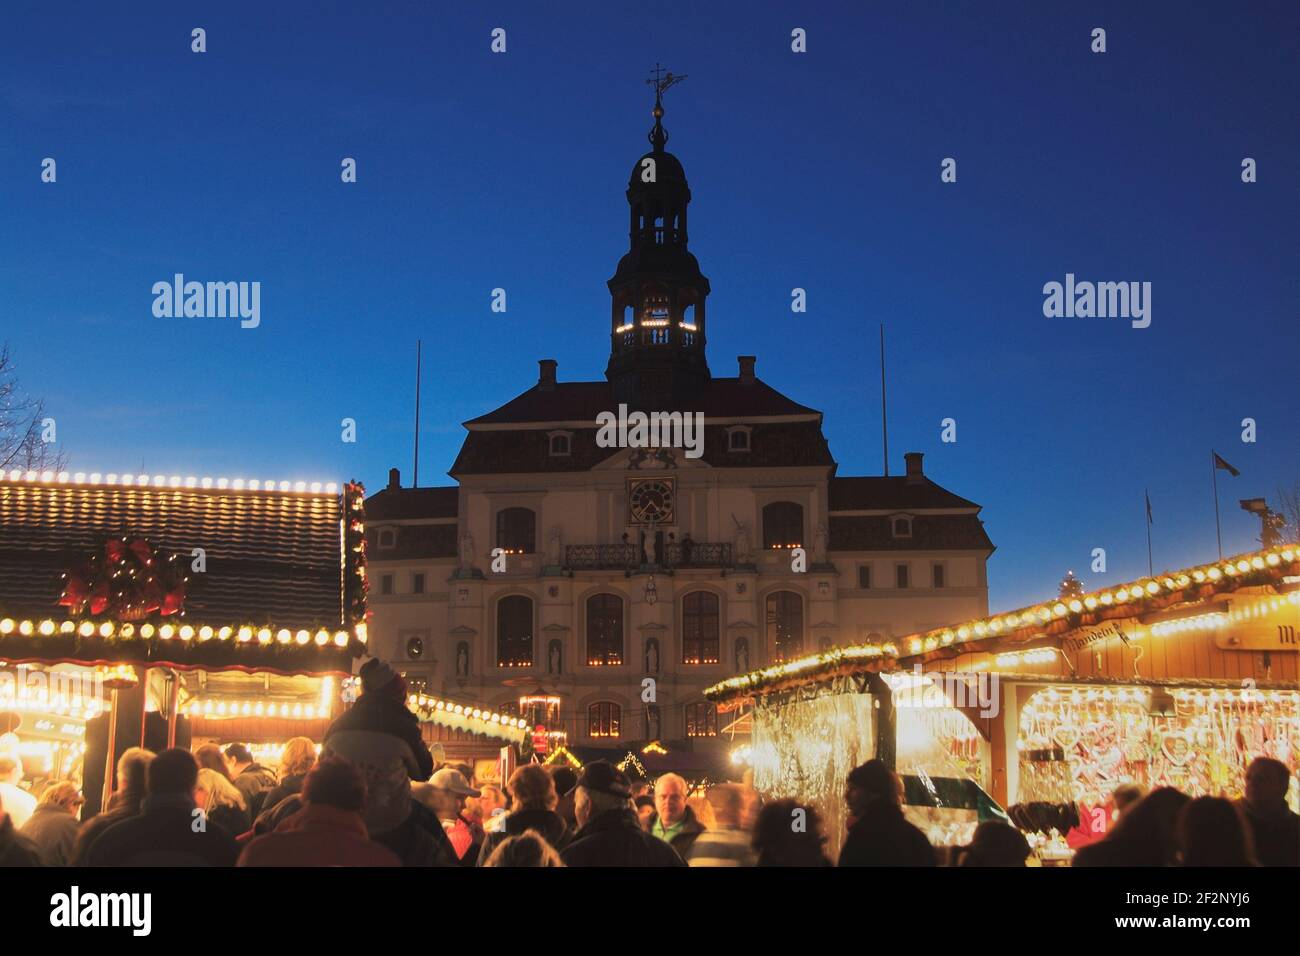 Weihnachtsmarkt vor dem alten Rathaus, Am Markt, Lüneburg, Lüneburger Heide, Niedersachsen, Deutschland, Europe | Christmas market in front of the old Stock Photo